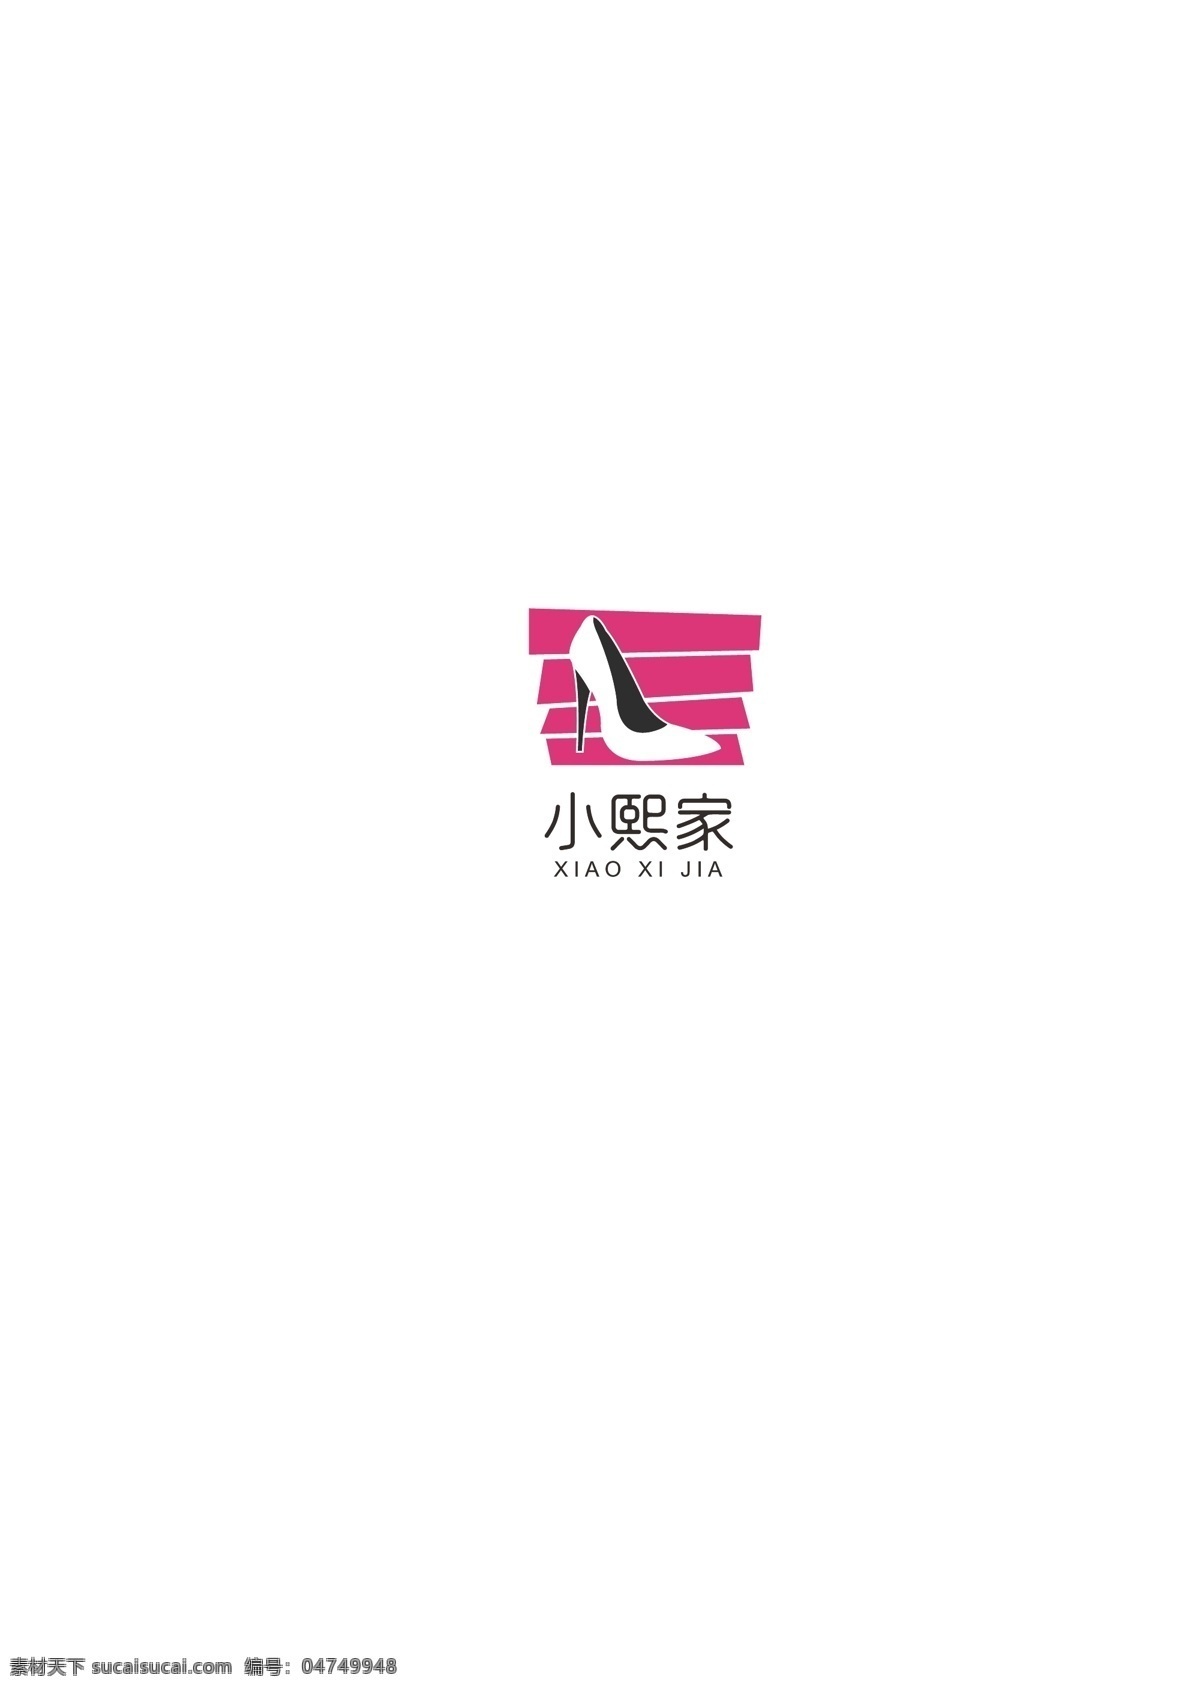 小 清新 鞋店 logo 鞋店logo 女鞋logo logo设计 标志设计 ai矢量 小清新